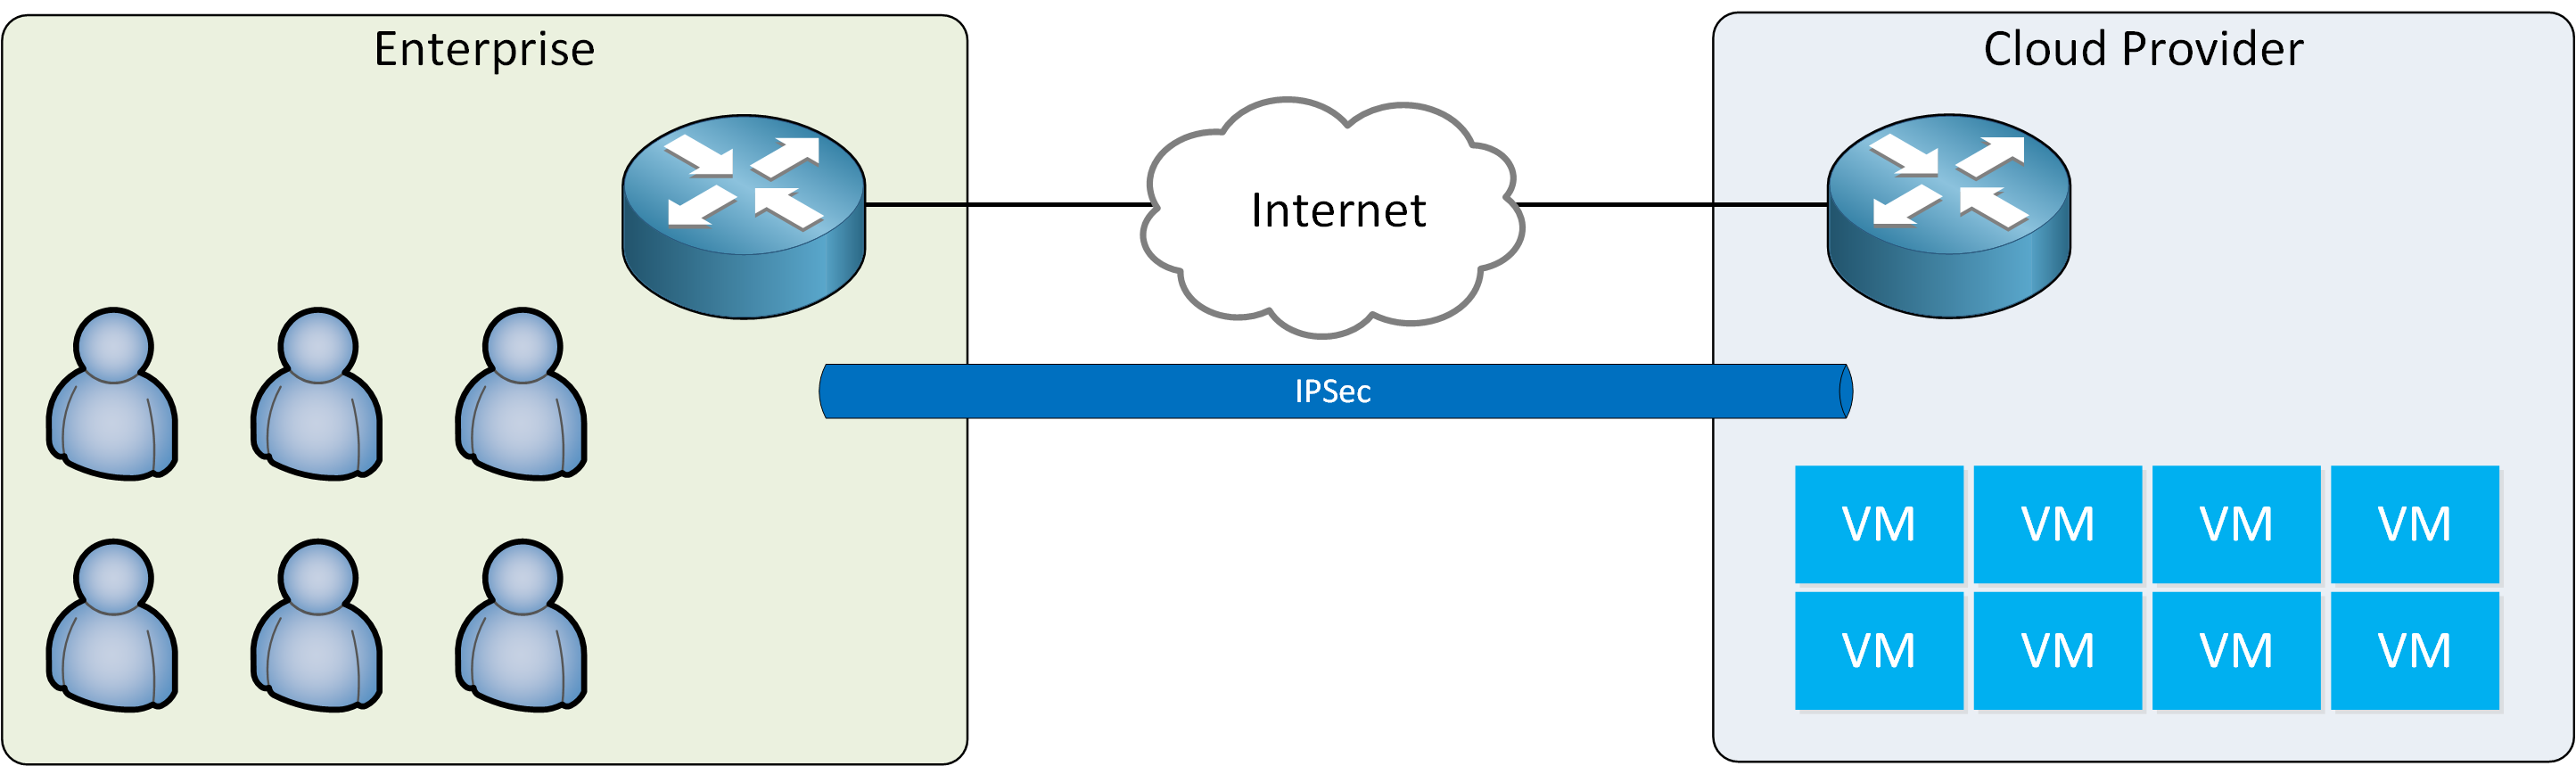 Enterprise Cloud Internet Ipsec